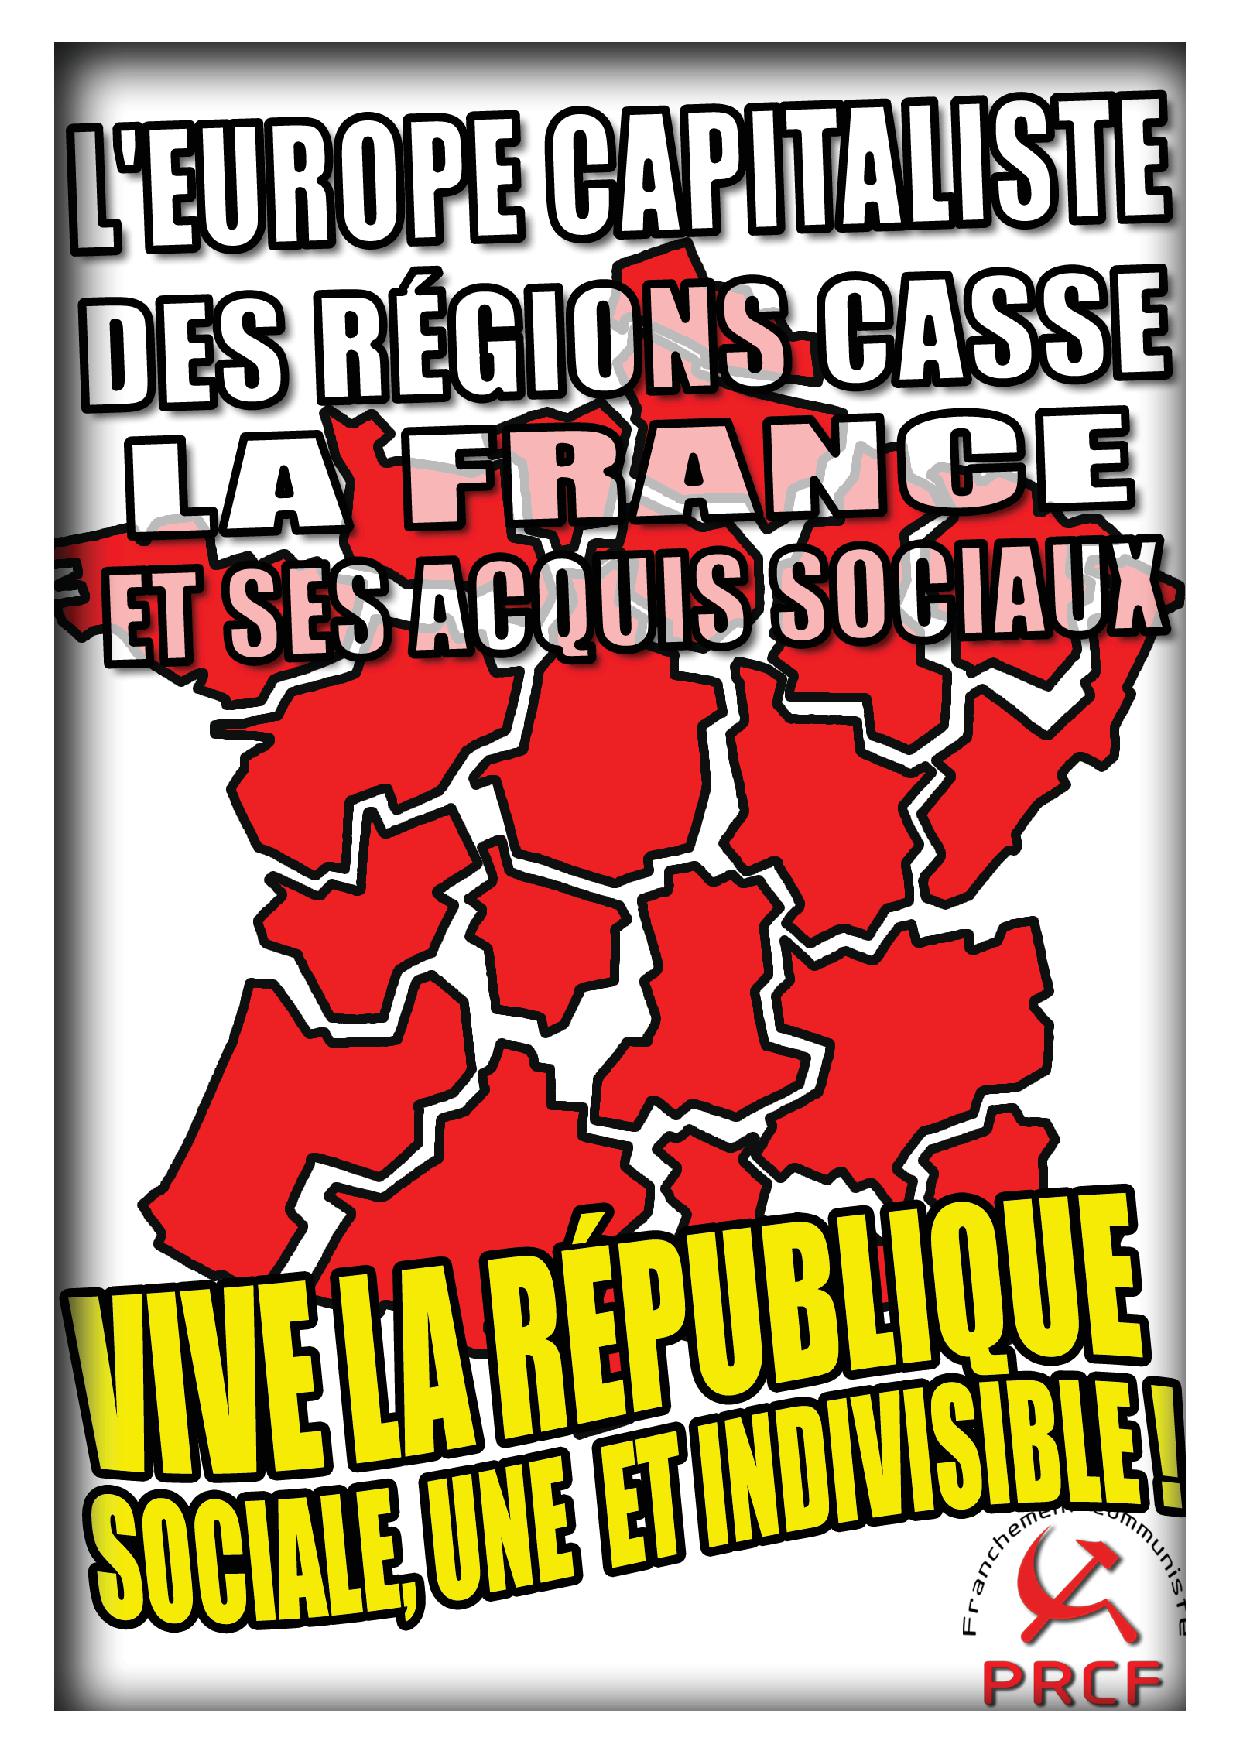 Euro Régions et Réforme territoriale : « Supprimer la France », les aveux du Figaro sur le but de la classe capitaliste